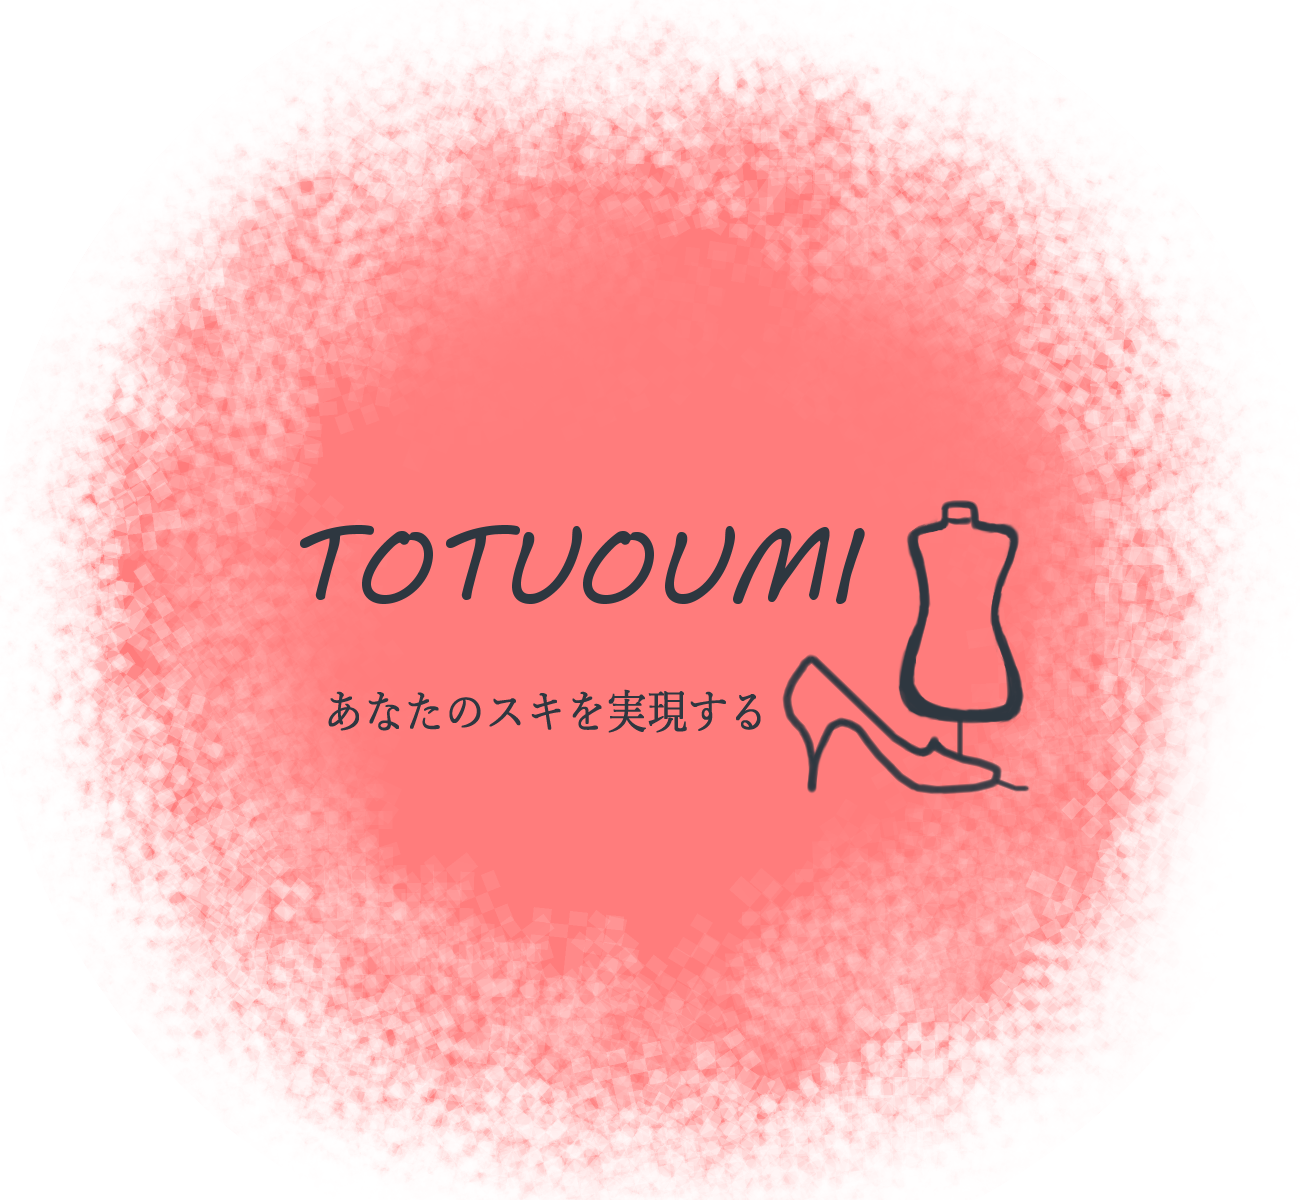 TOTUOUMI